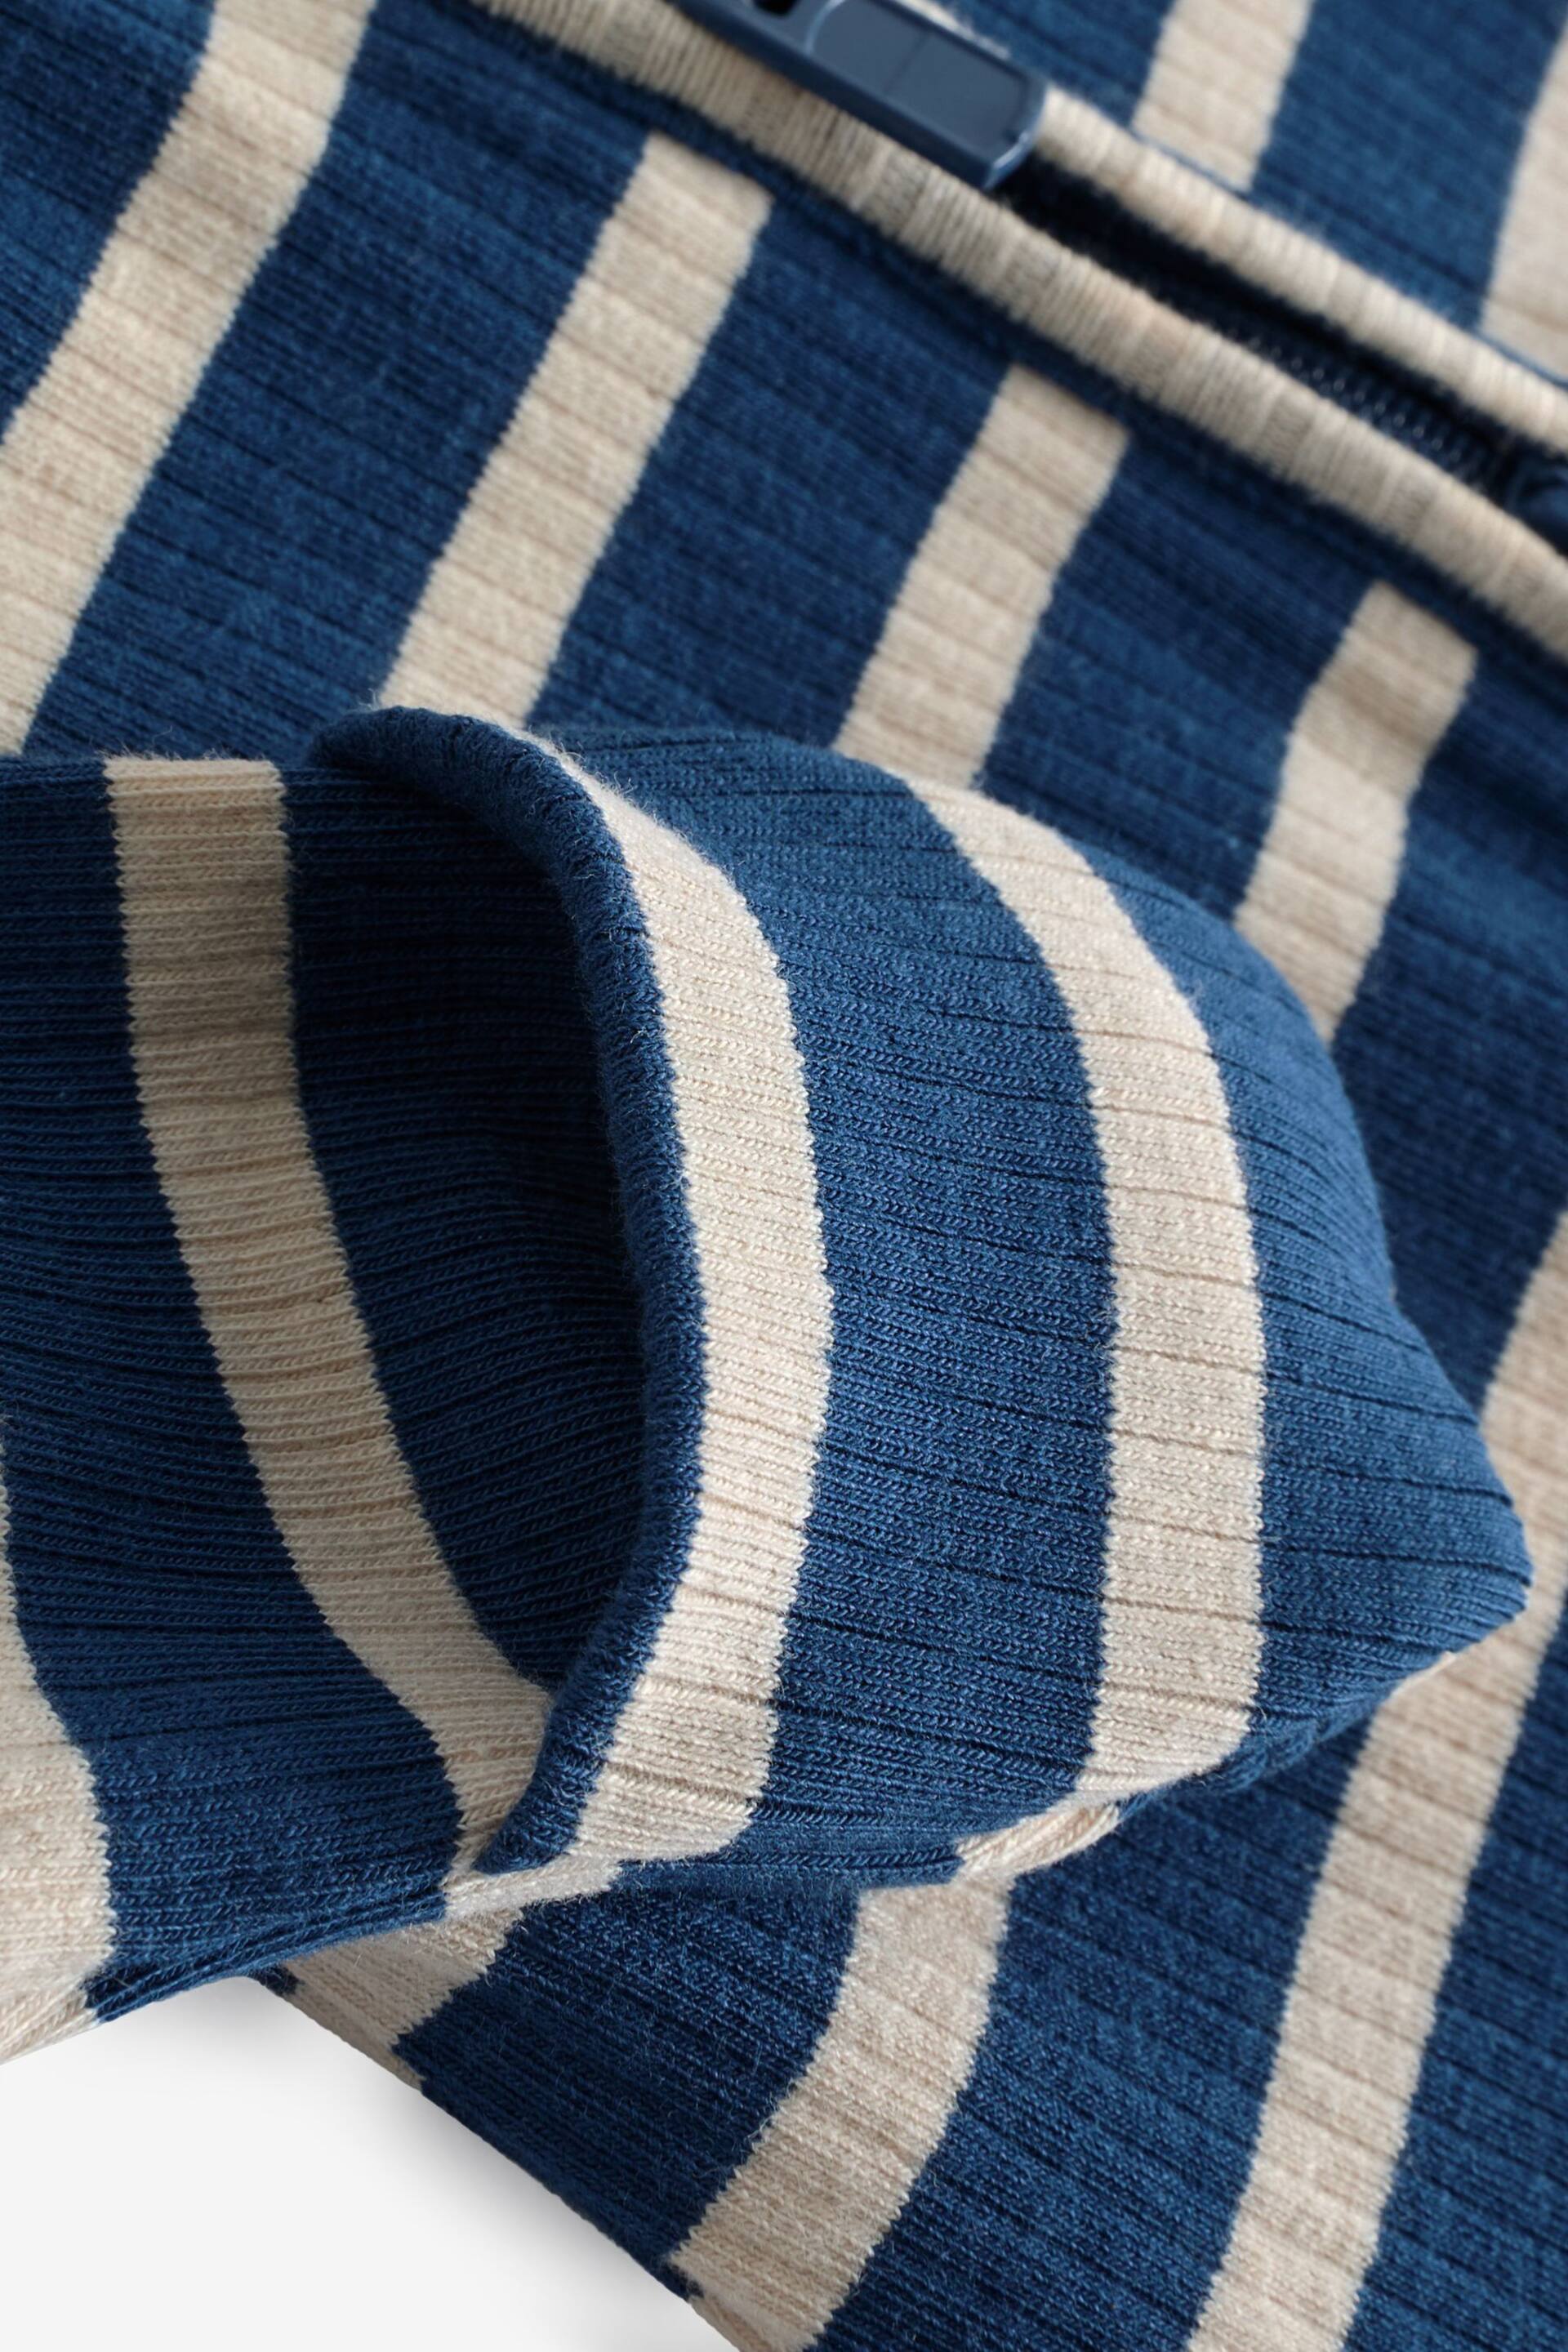 Bonds Blue Easy Stripe Zip Sleepsuit Wondersuit - Image 3 of 4